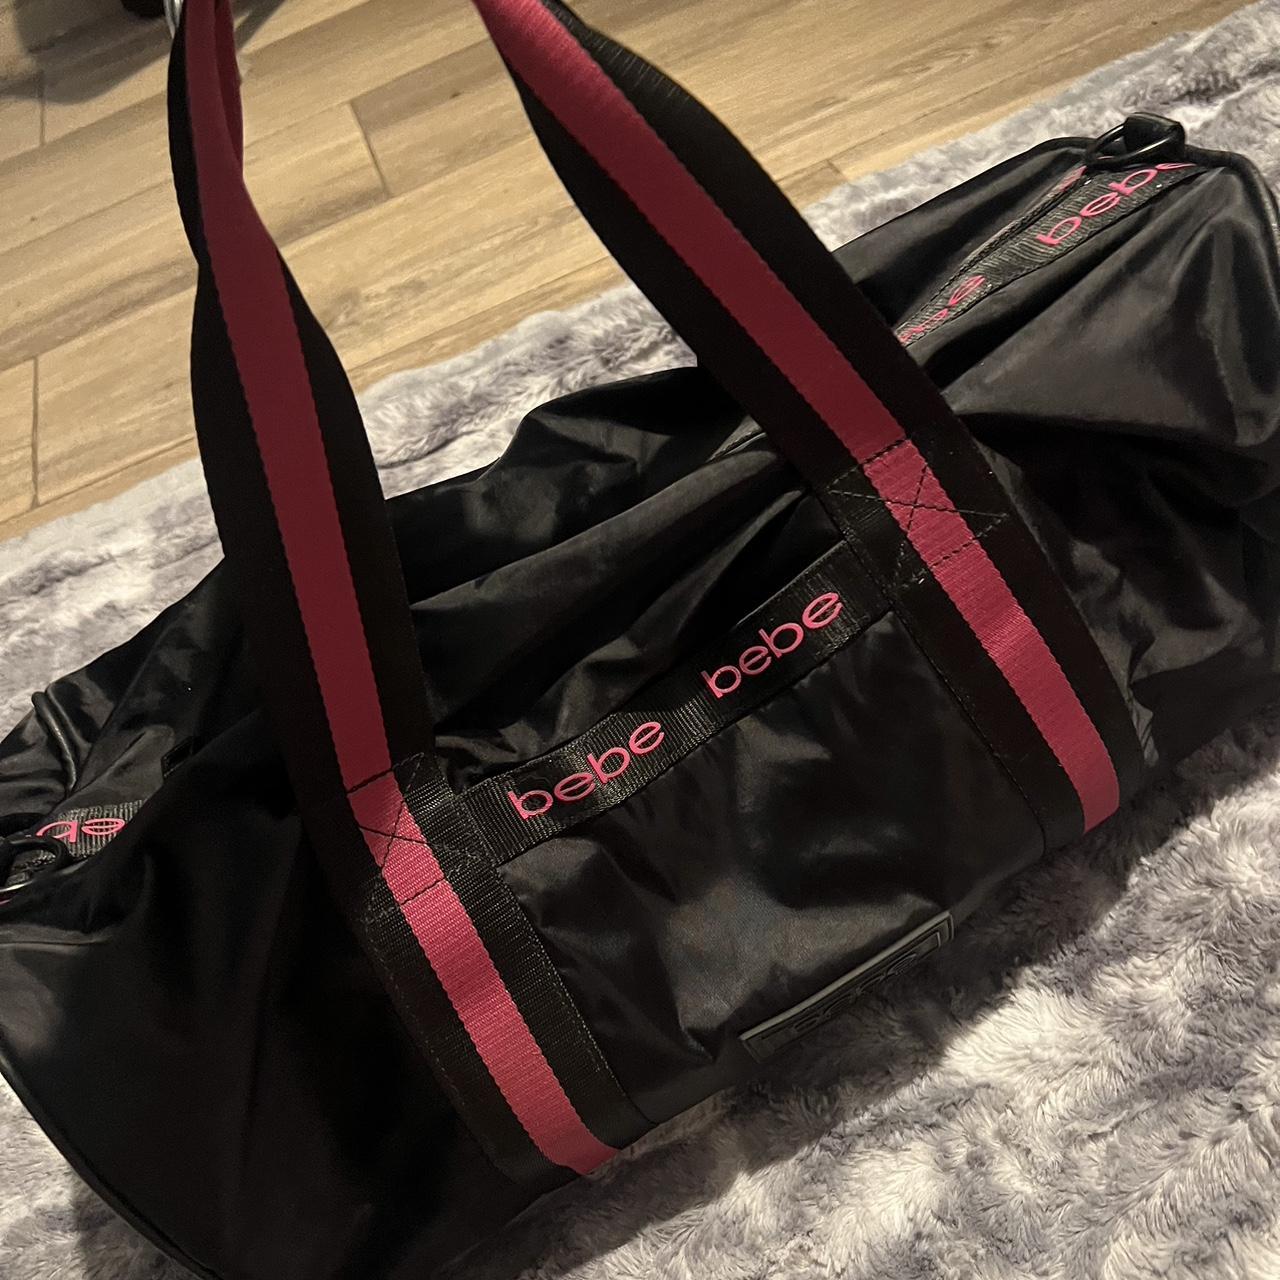 the cutest y2k black and pink bebe duffel bag it's - Depop